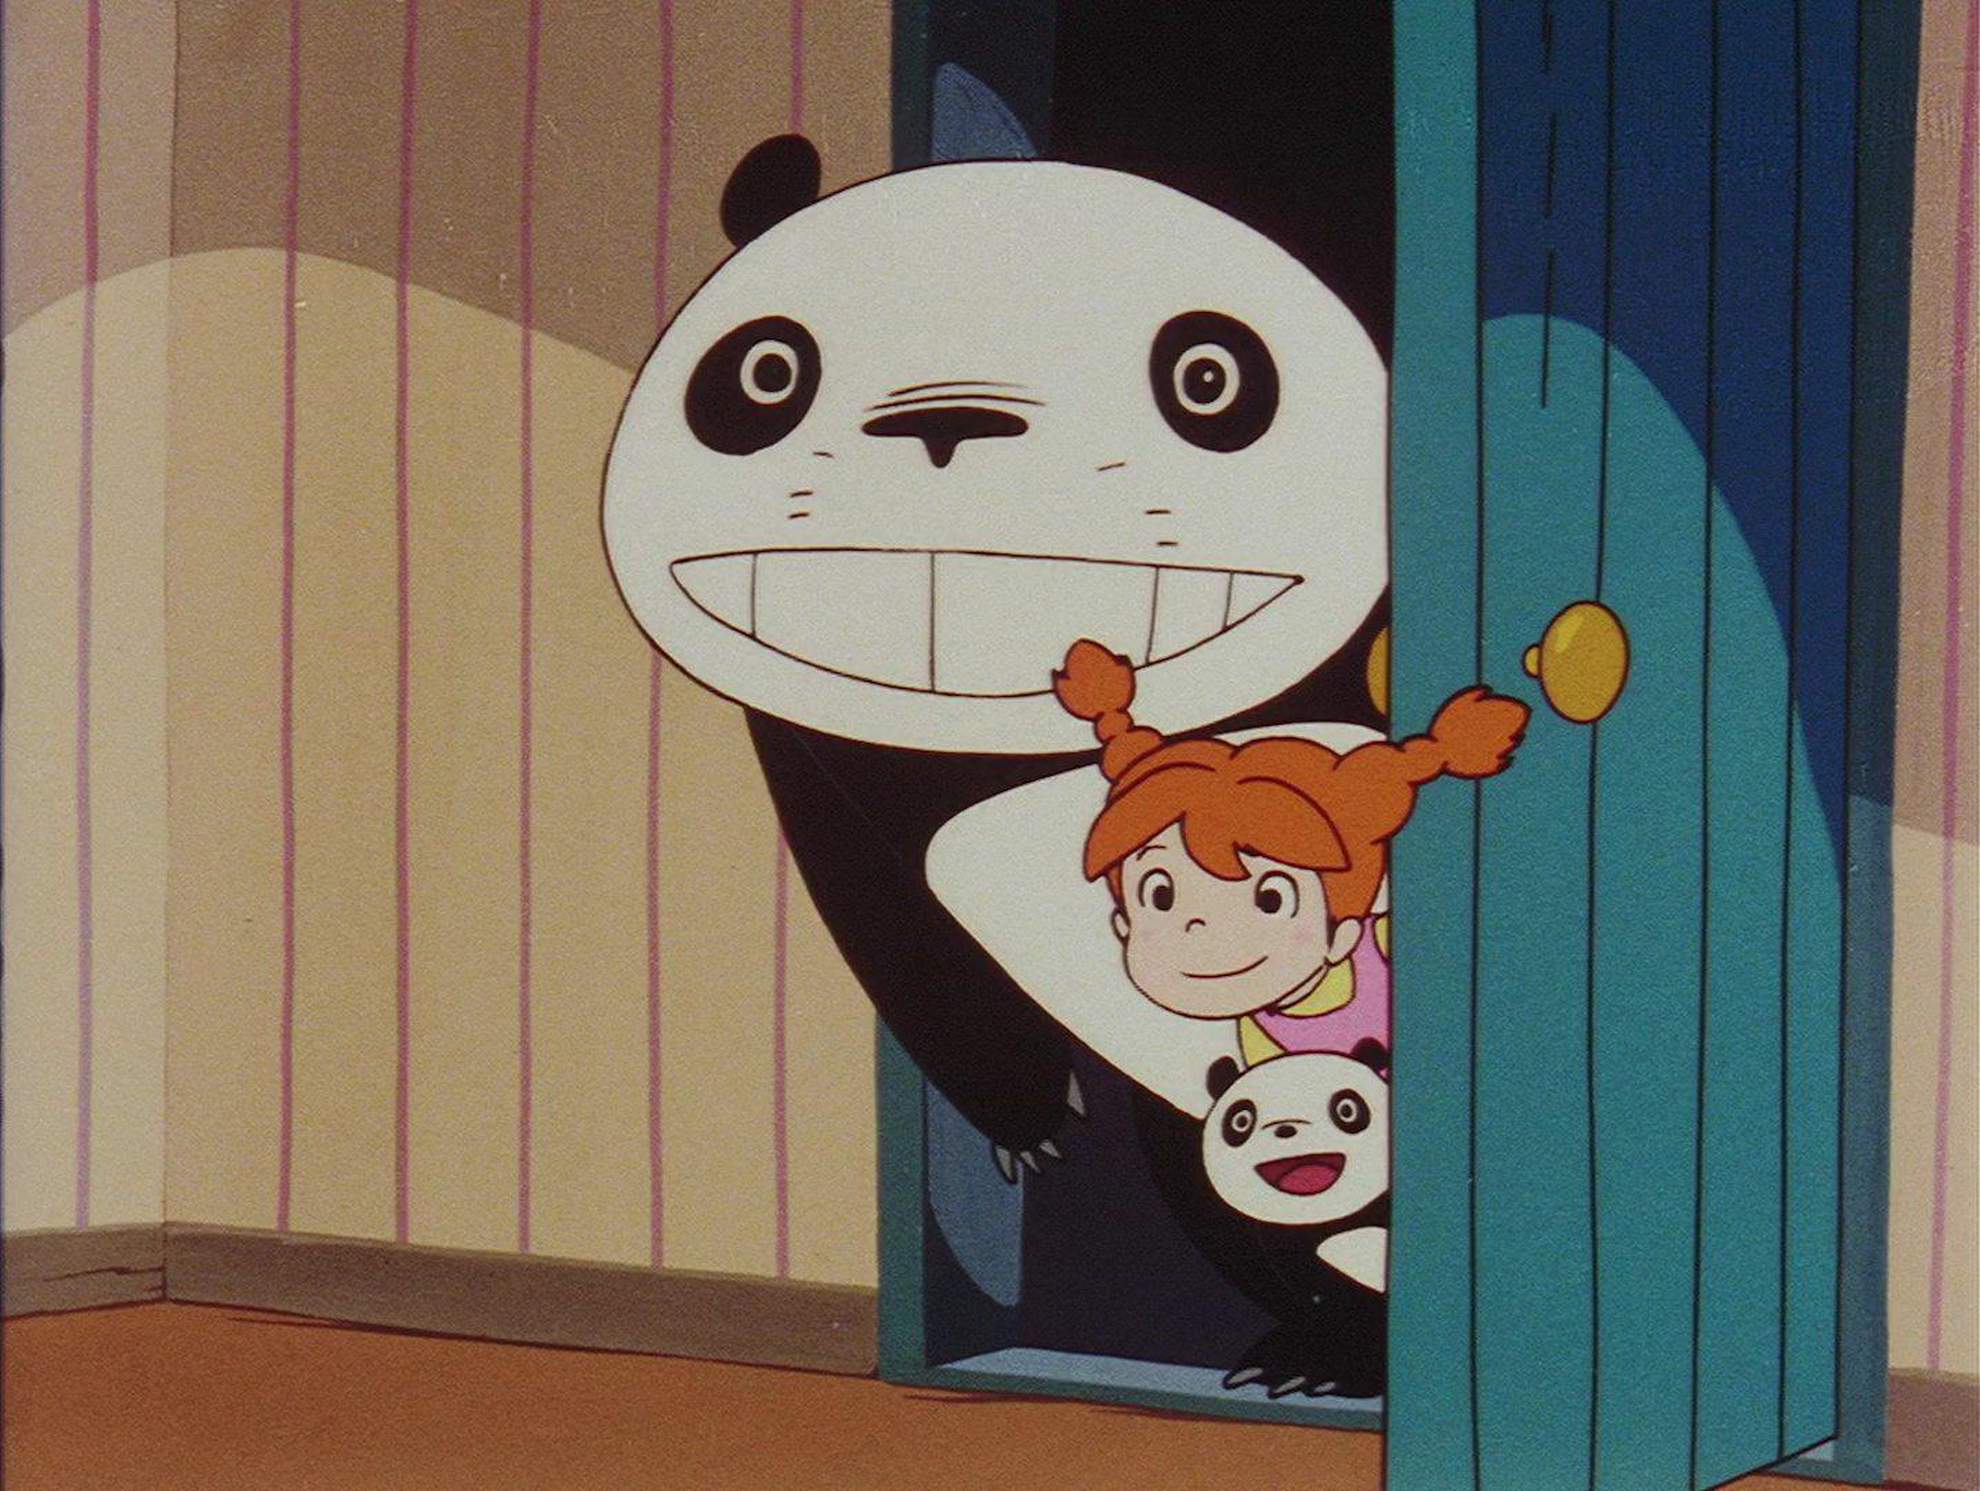 кадр из мультфильма "Панда большая и маленькая"